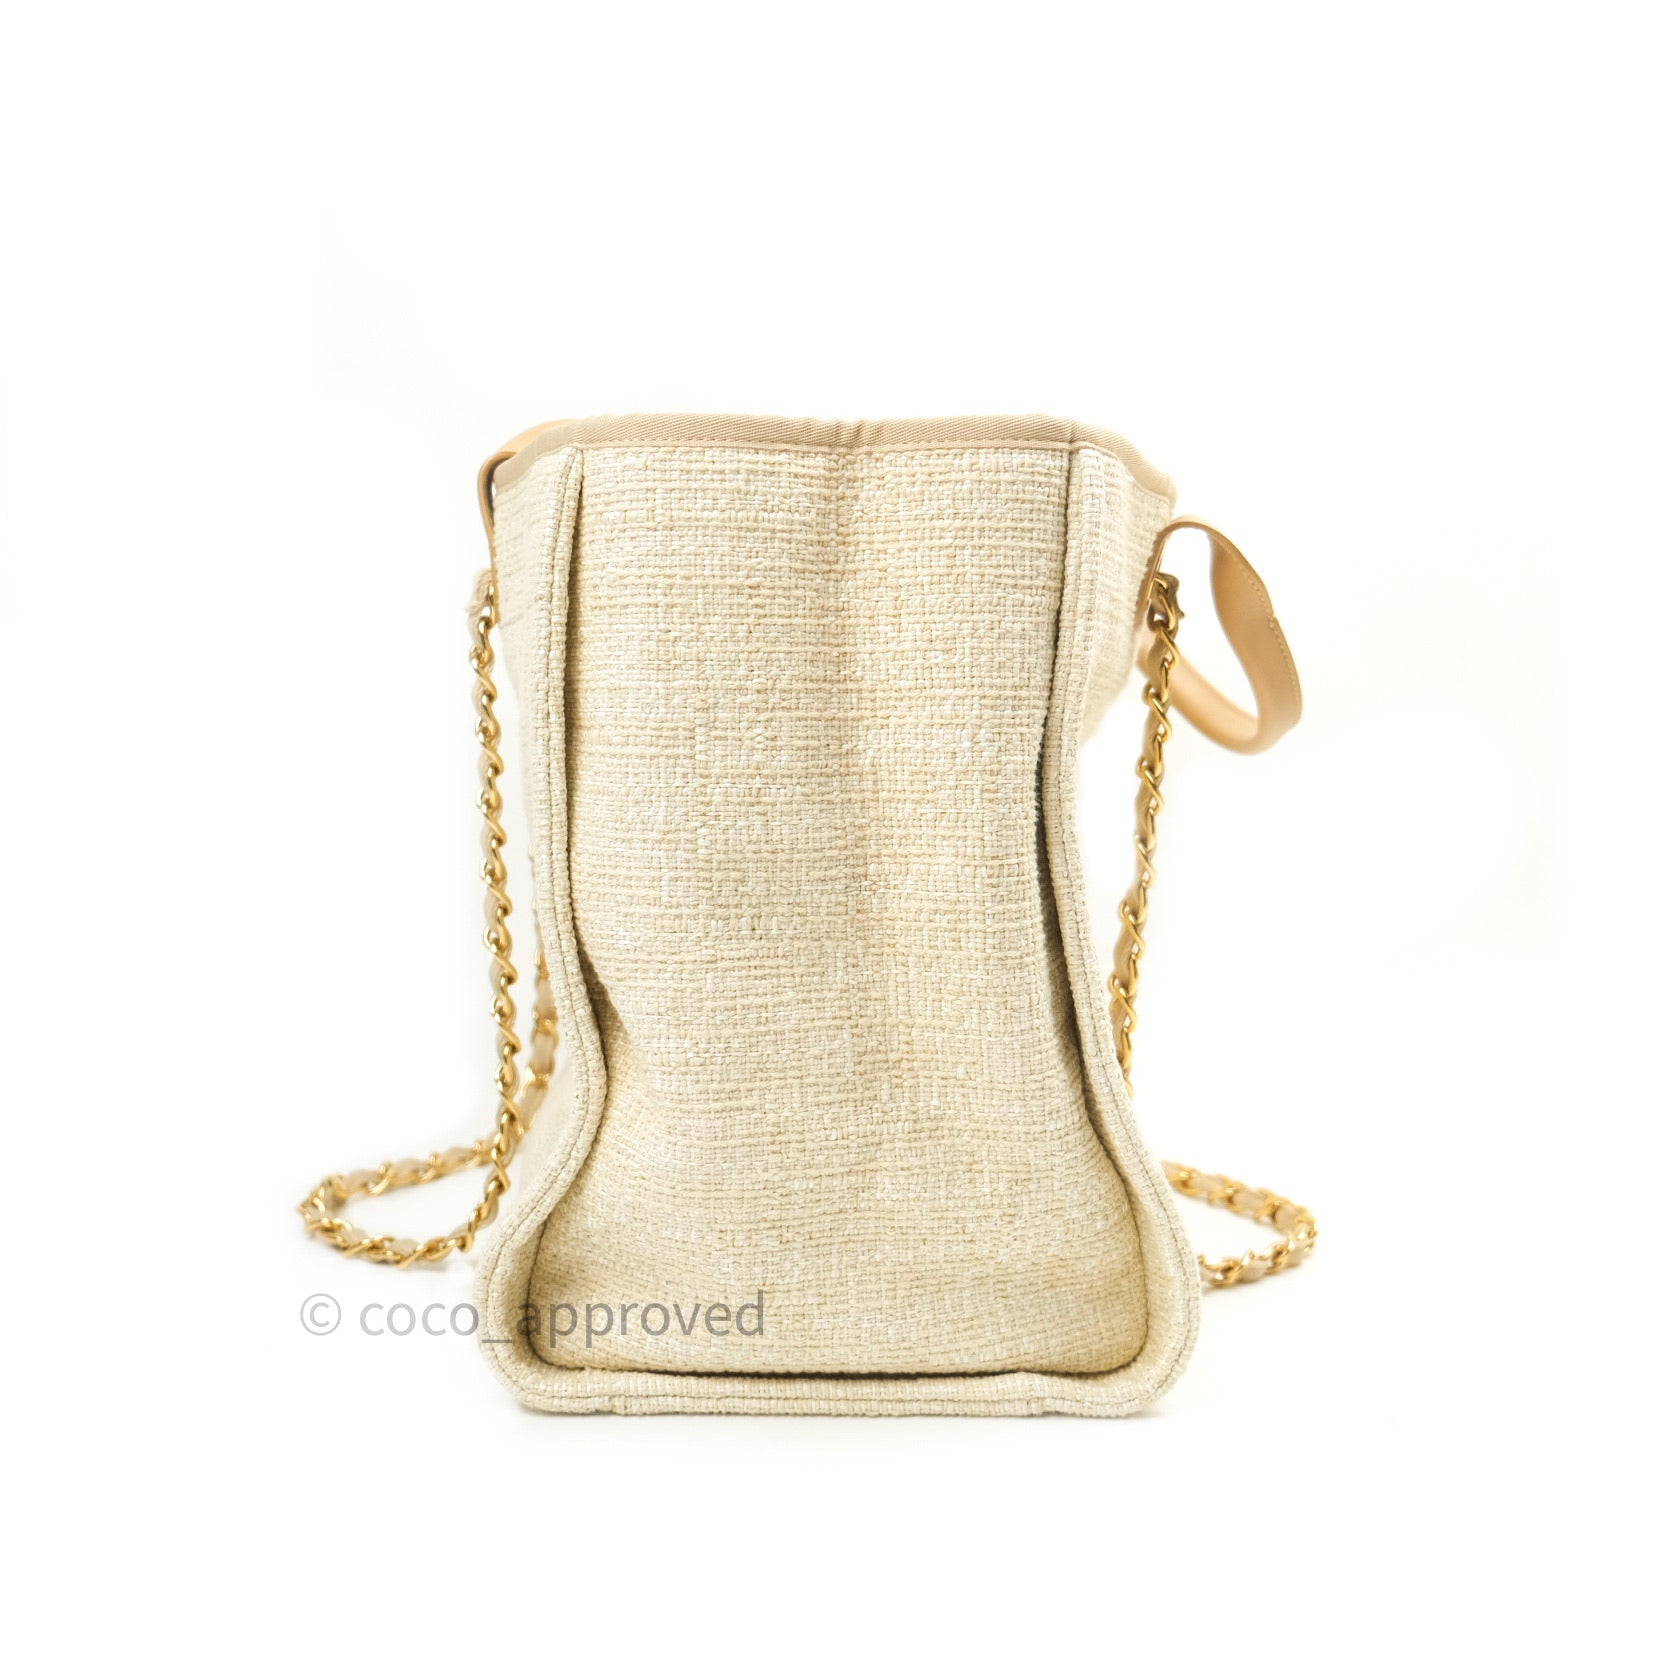 Sold at Auction: Chanel Straw Shoulder Bag